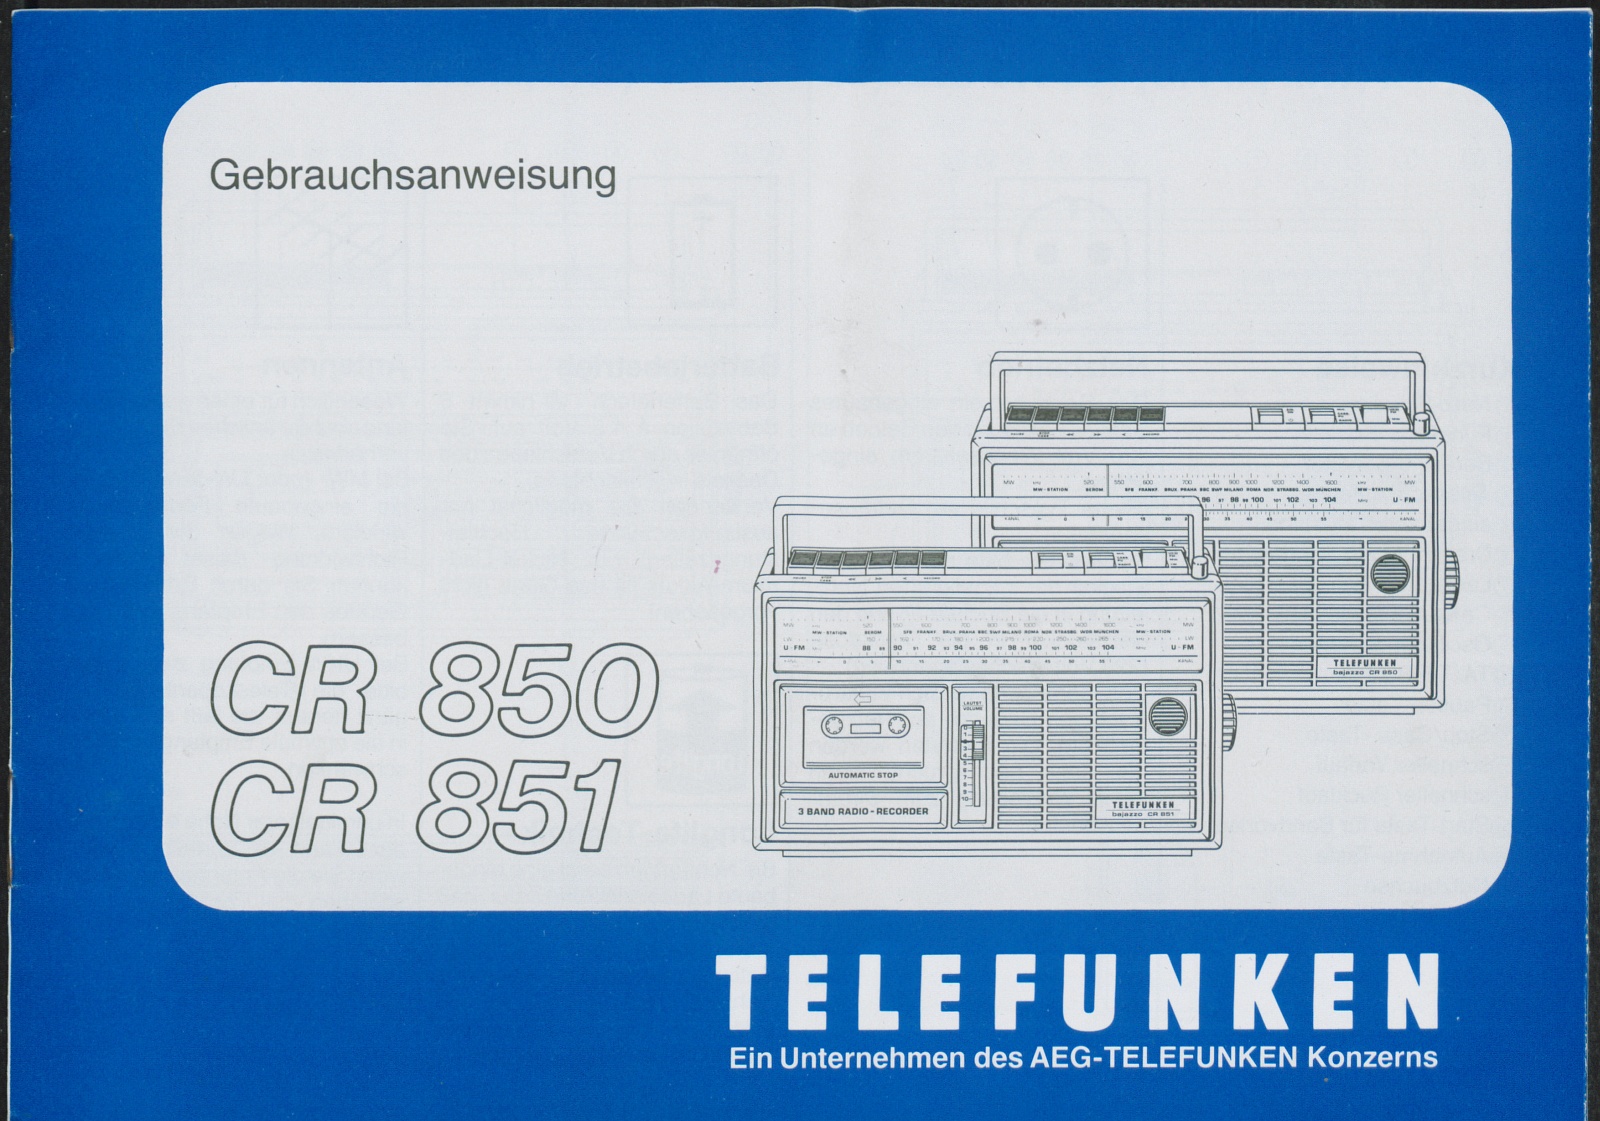 Bedienungsanleitung: Telefunken bajazzo CR 850, CR 851 (Stiftung Deutsches Technikmuseum Berlin CC0)